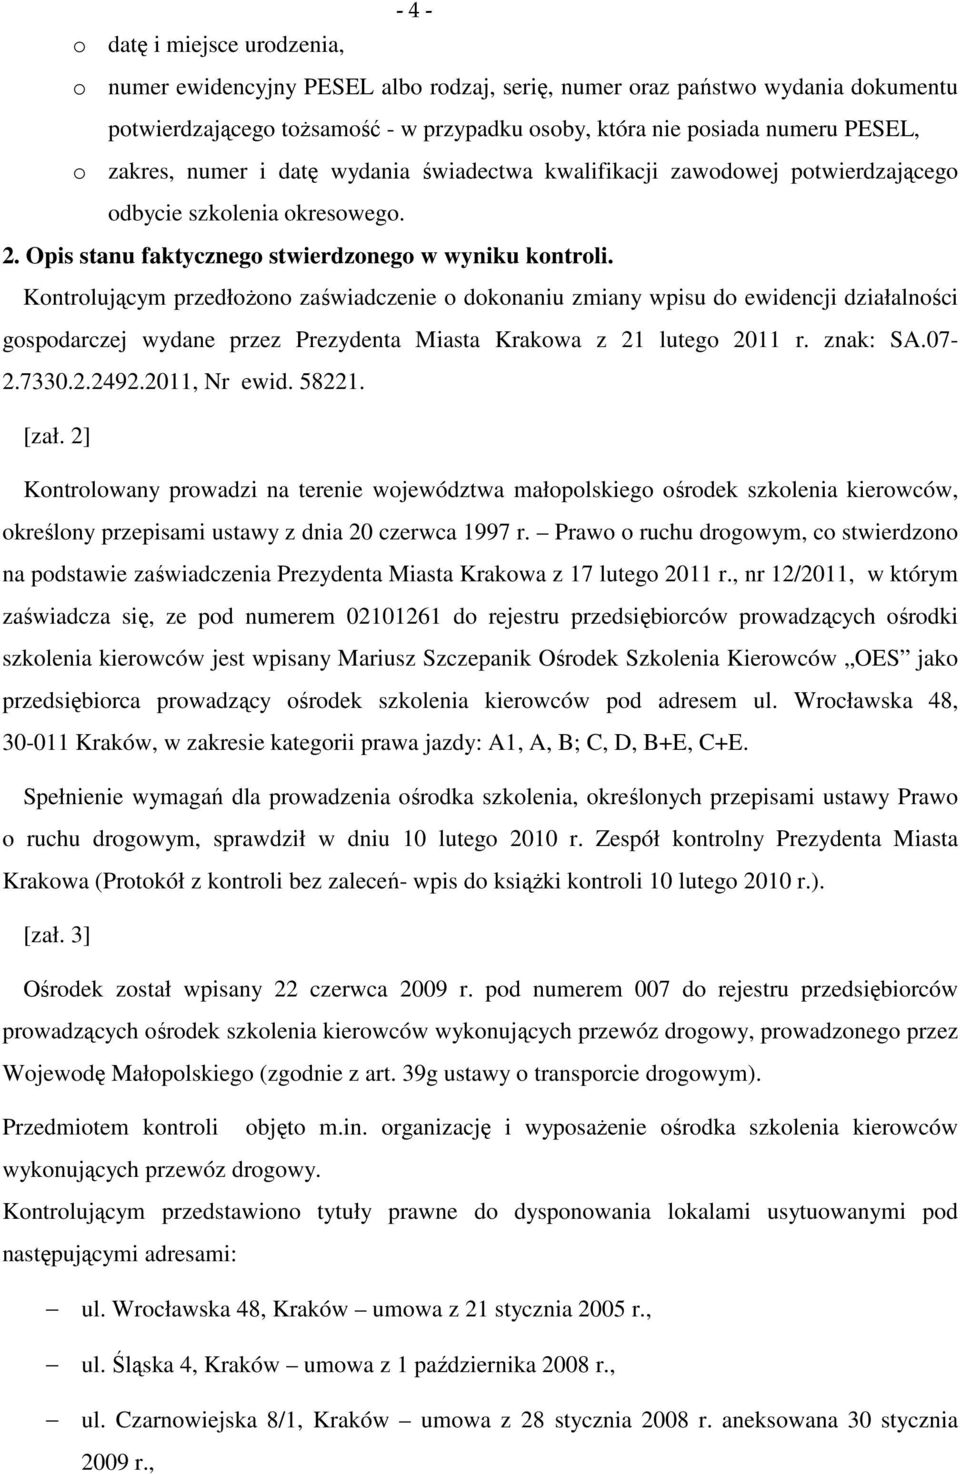 Kontrolującym przedłożono zaświadczenie o dokonaniu zmiany wpisu do ewidencji działalności gospodarczej wydane przez Prezydenta Miasta Krakowa z 21 lutego 2011 r. znak: SA.07-2.7330.2.2492.